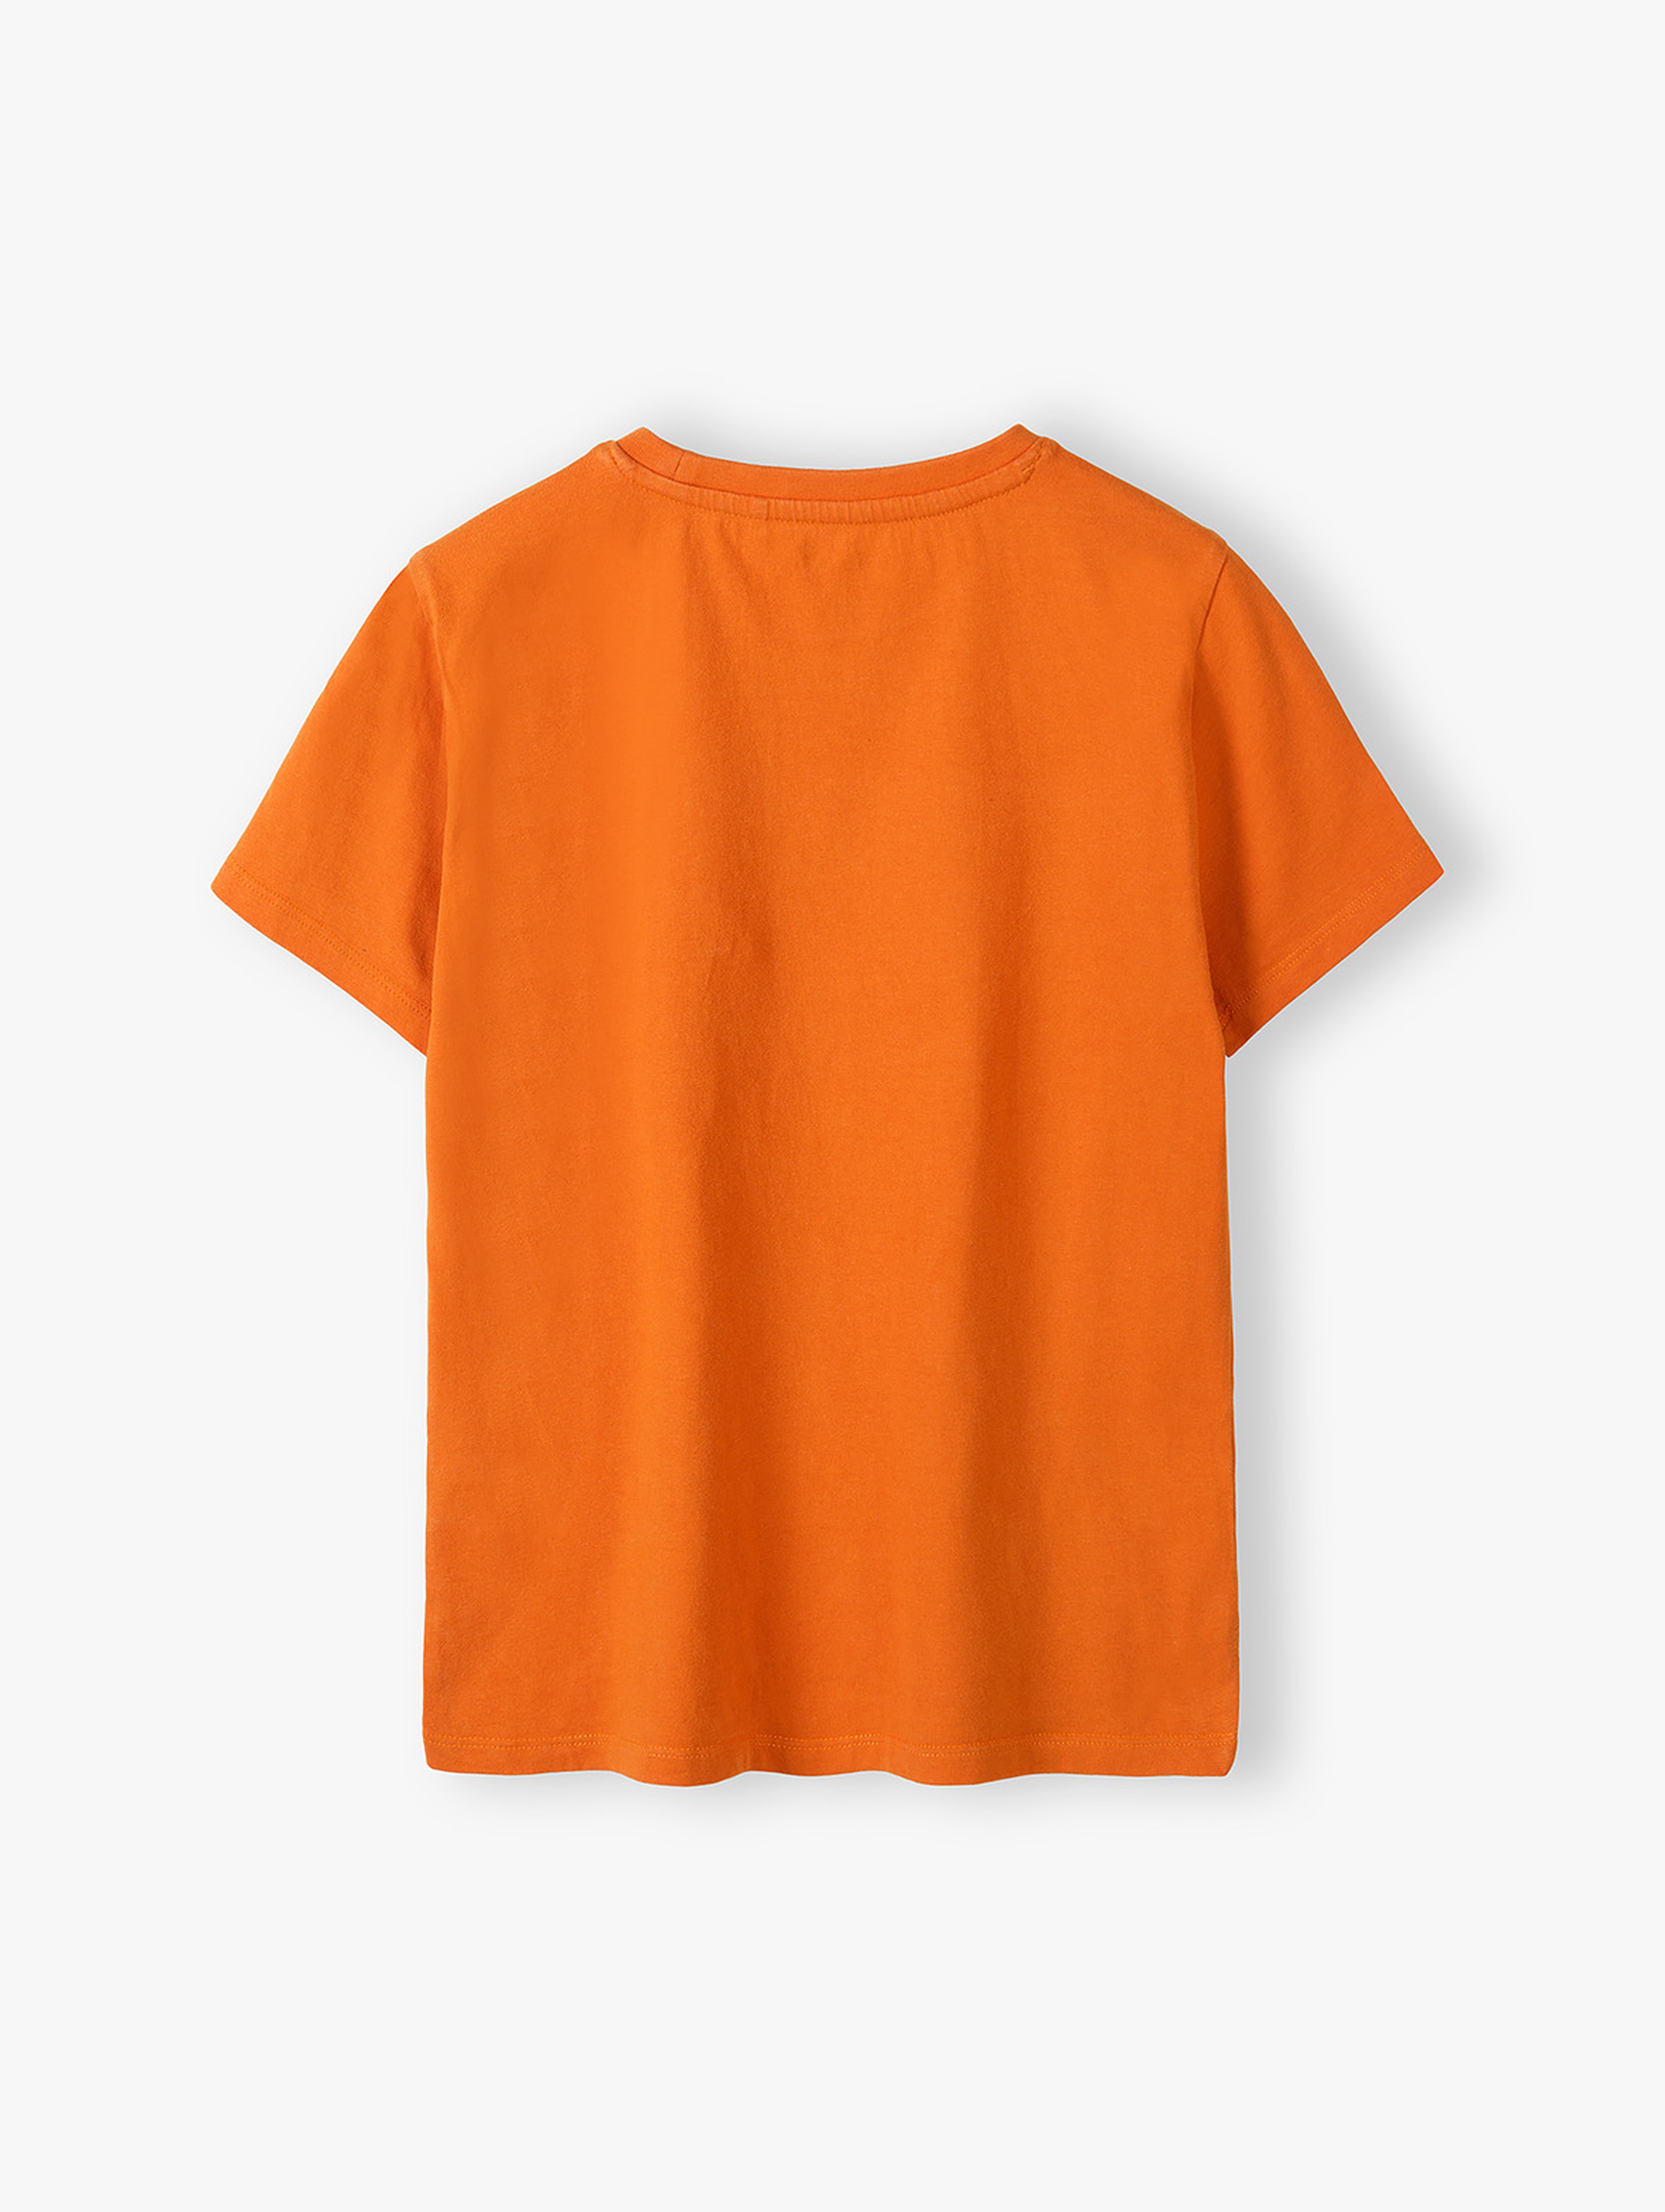 Pomarańczowy gładki t-shirt dla dziecka